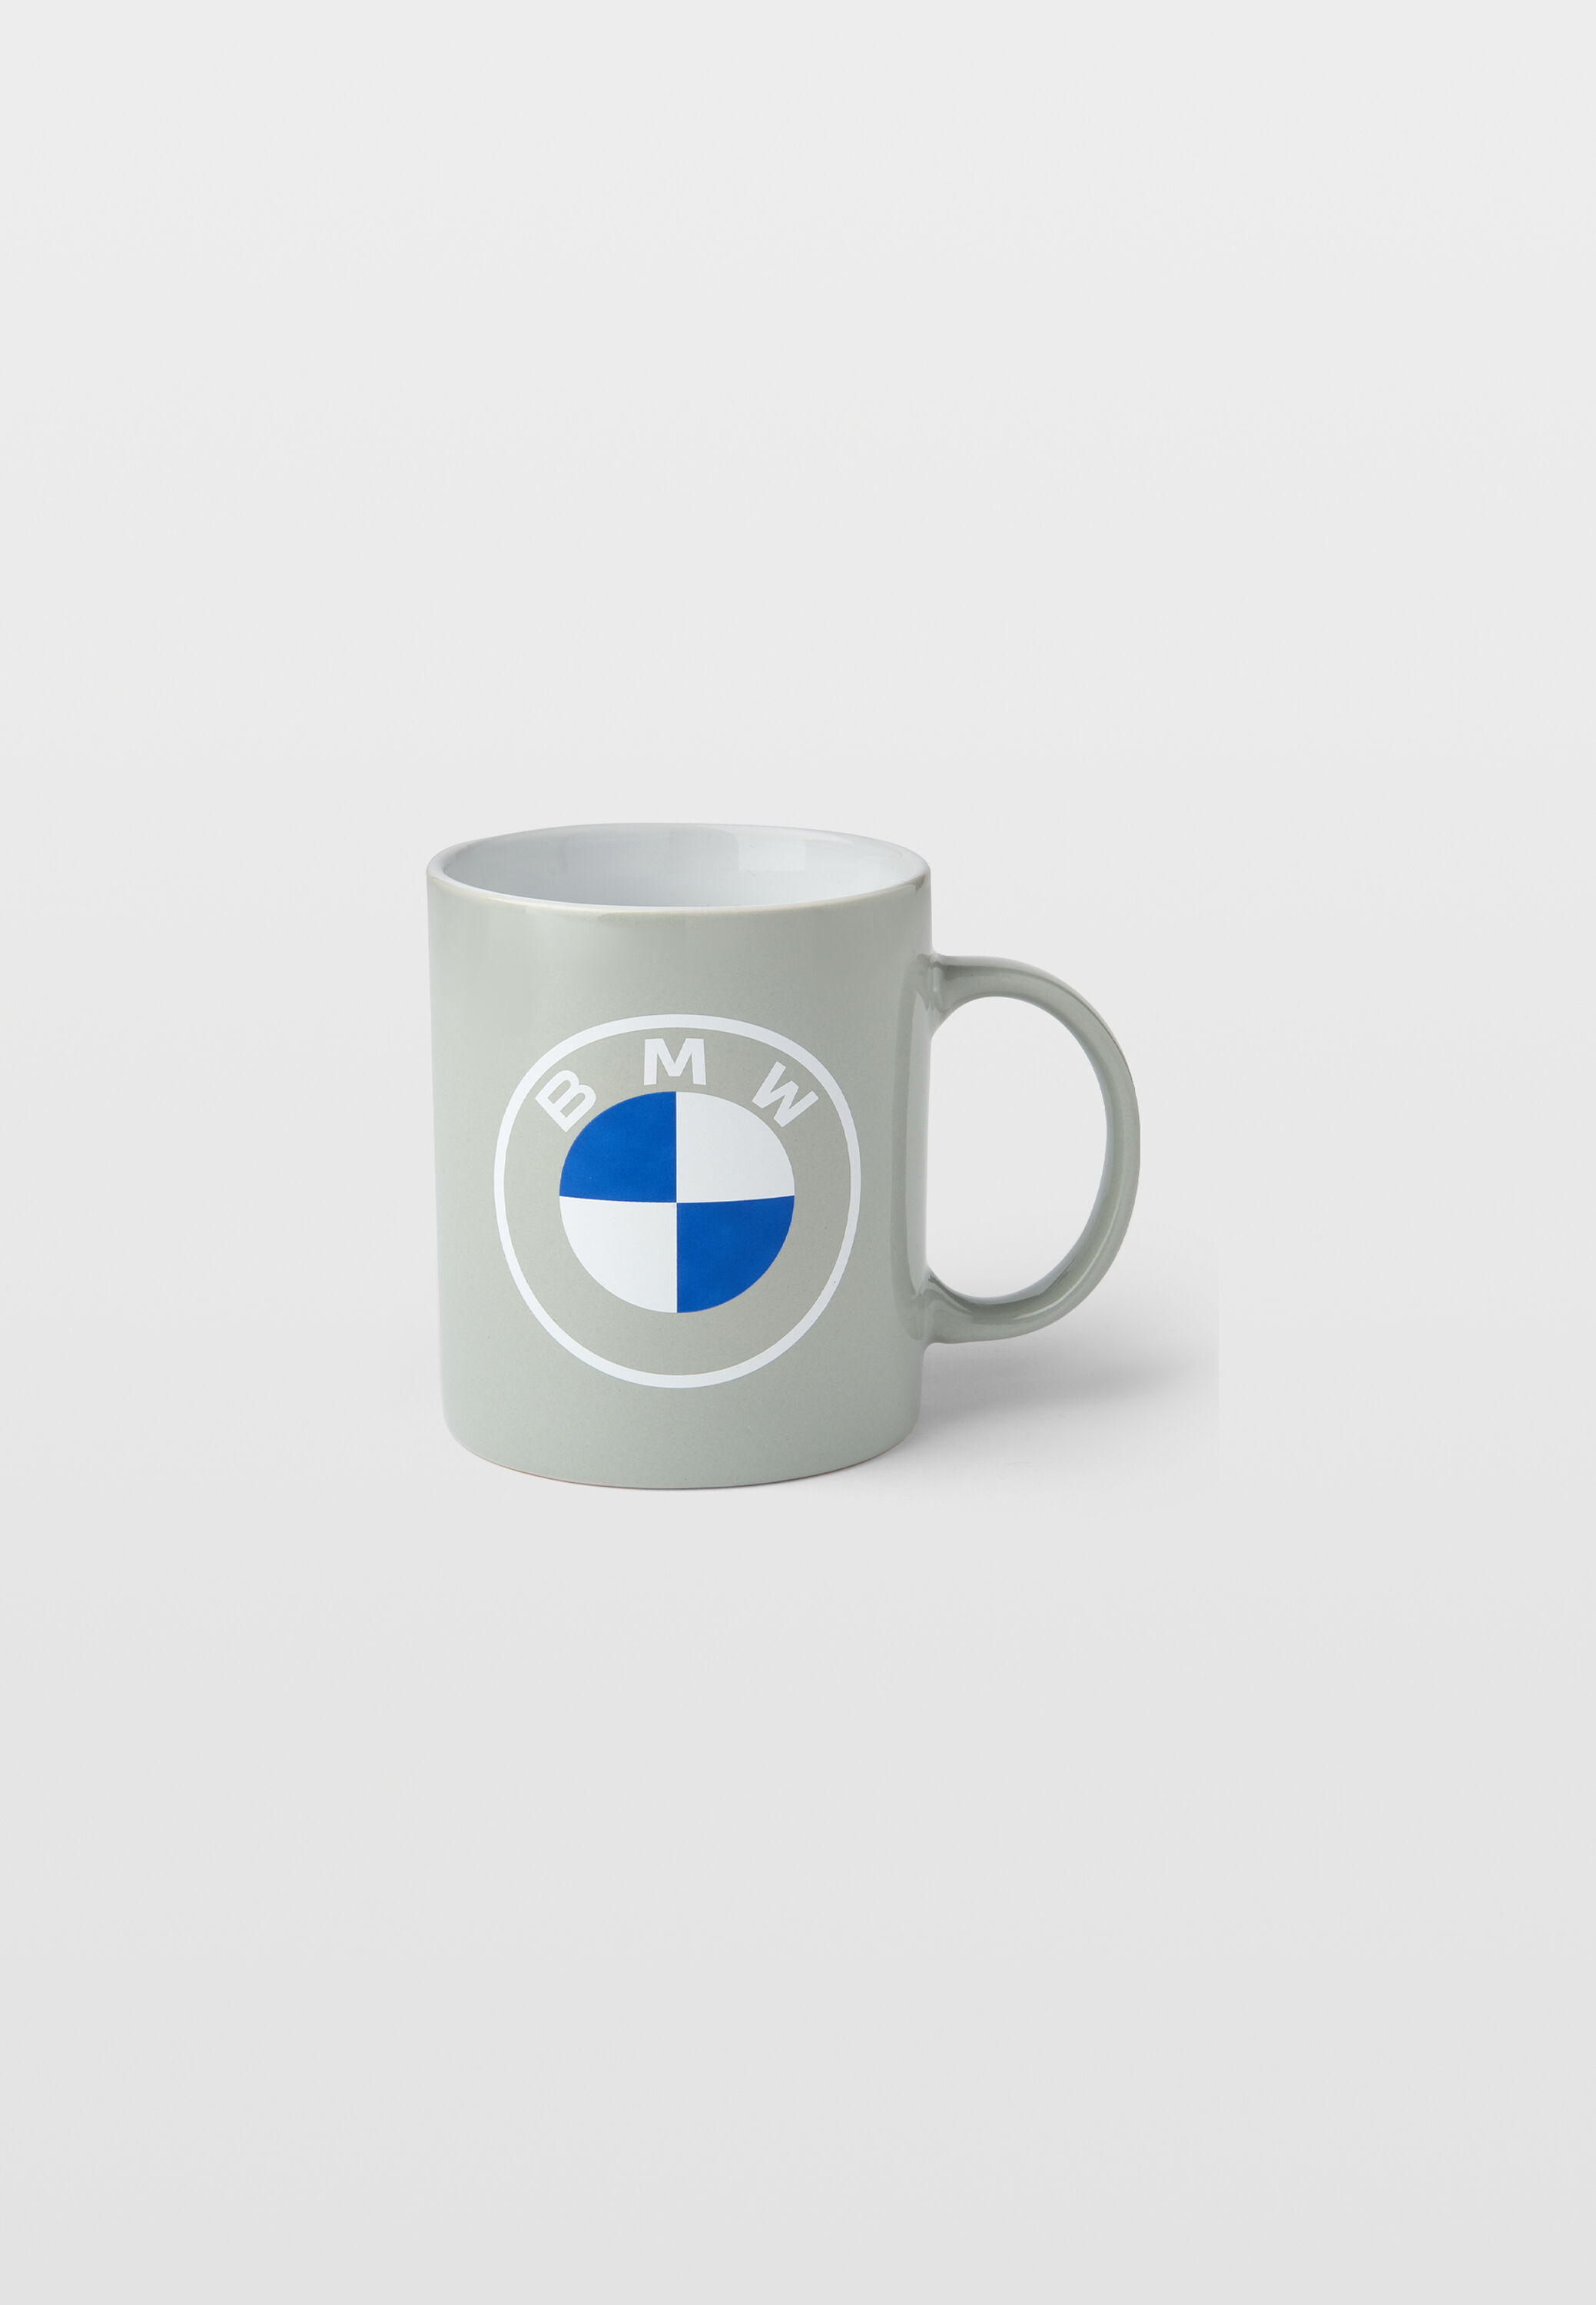 Mug BMW - Tasse en céramique